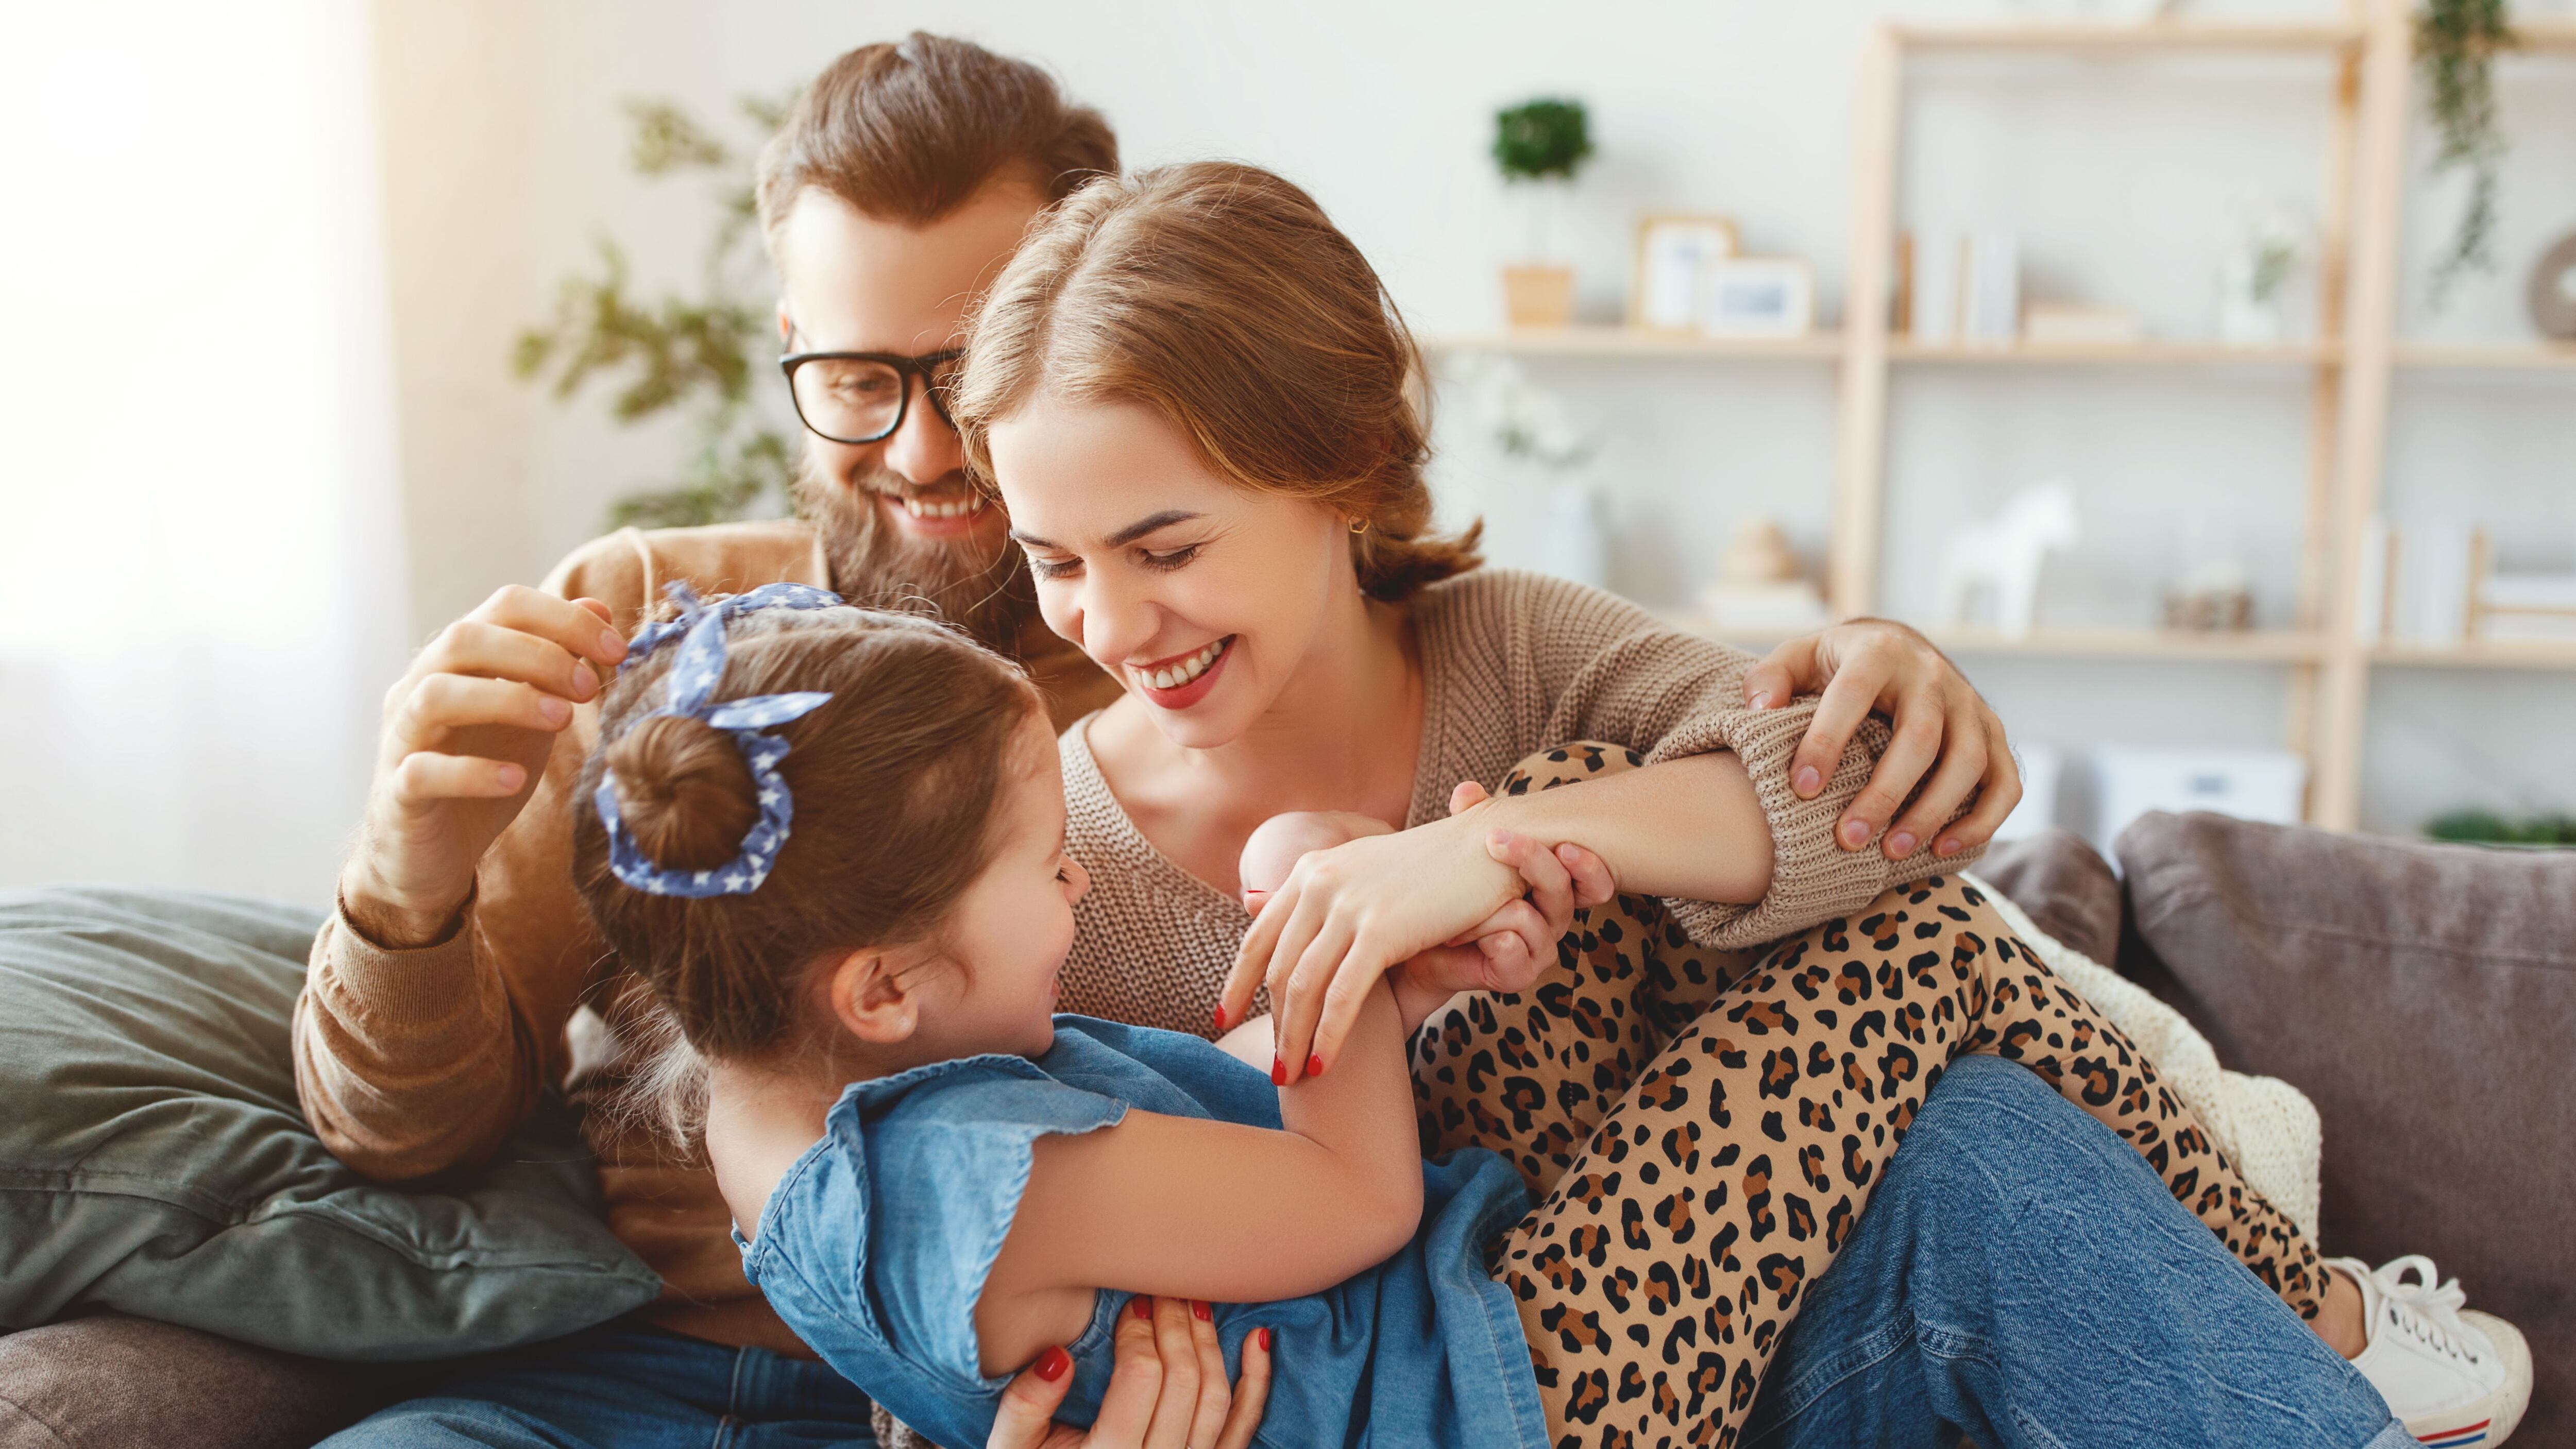 Los padres pasan más tiempo que nunca con sus hijos, y esto se debe en parte a los cambios en las convenciones sociales y al progreso económico (Shutterstock) 